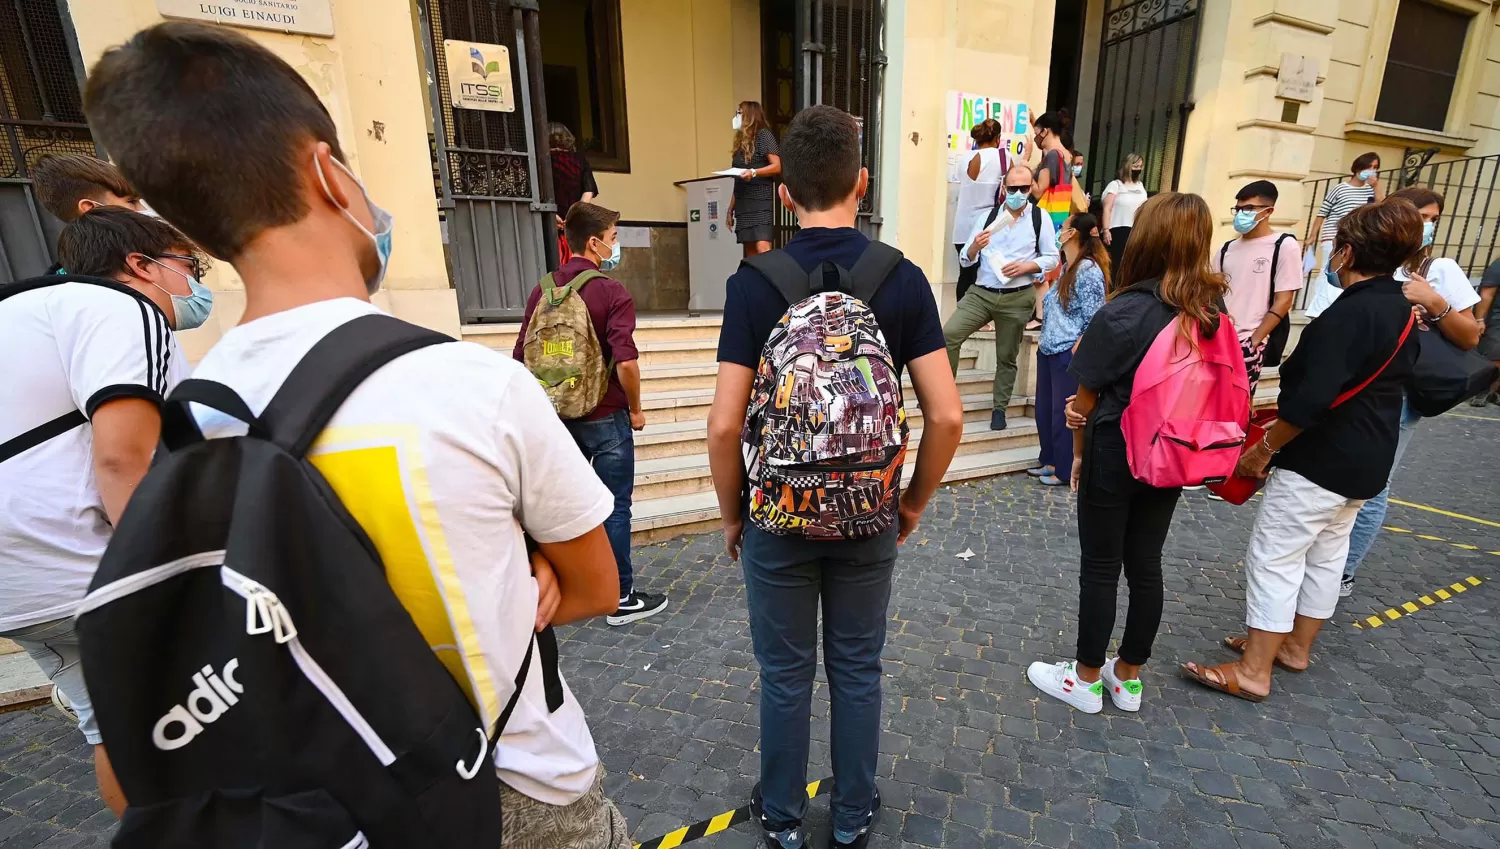 MEDIDAS. Las autoridades educativas de Italia dispusieron que los alumnos deberán tomarse la temperatura en sus casas, ya que las escuelas no prevén el monitoreo de fiebre.